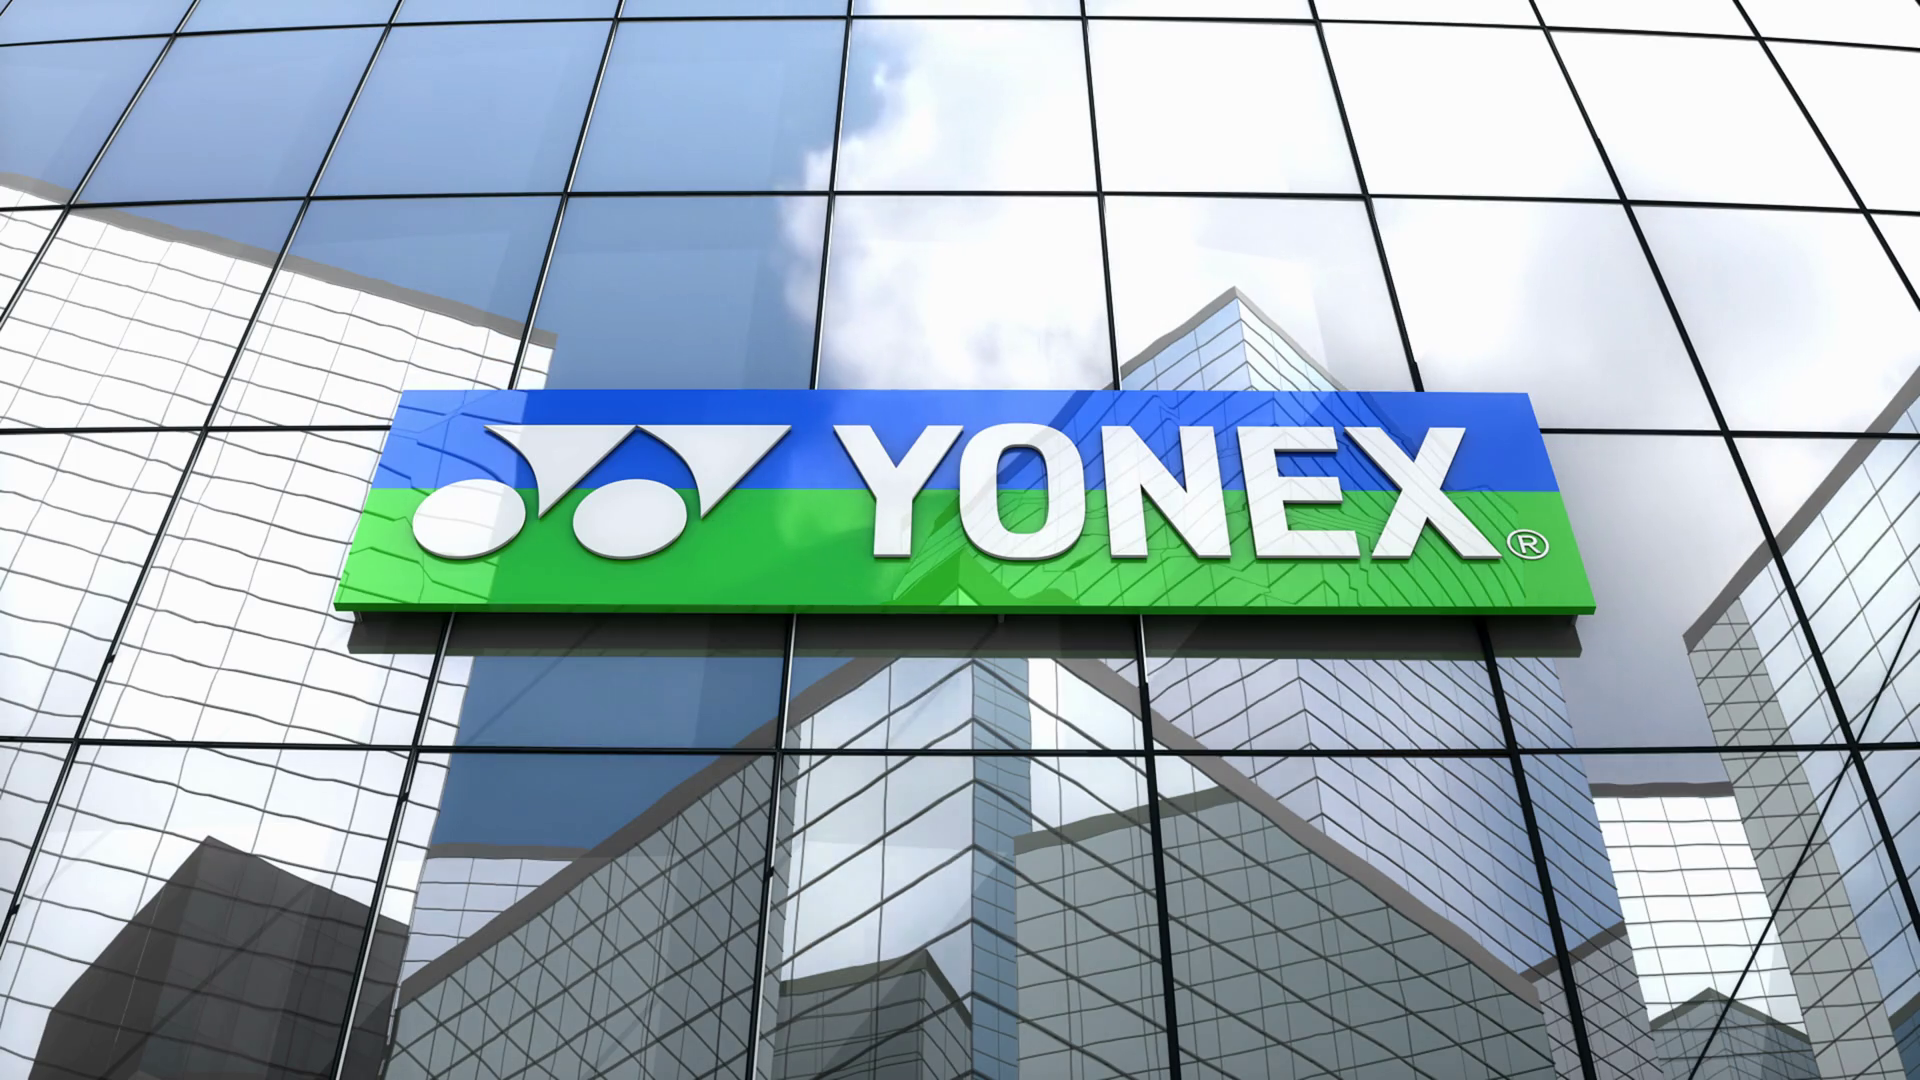 Yonex Logo | Yonex, Stencils, Holi painting